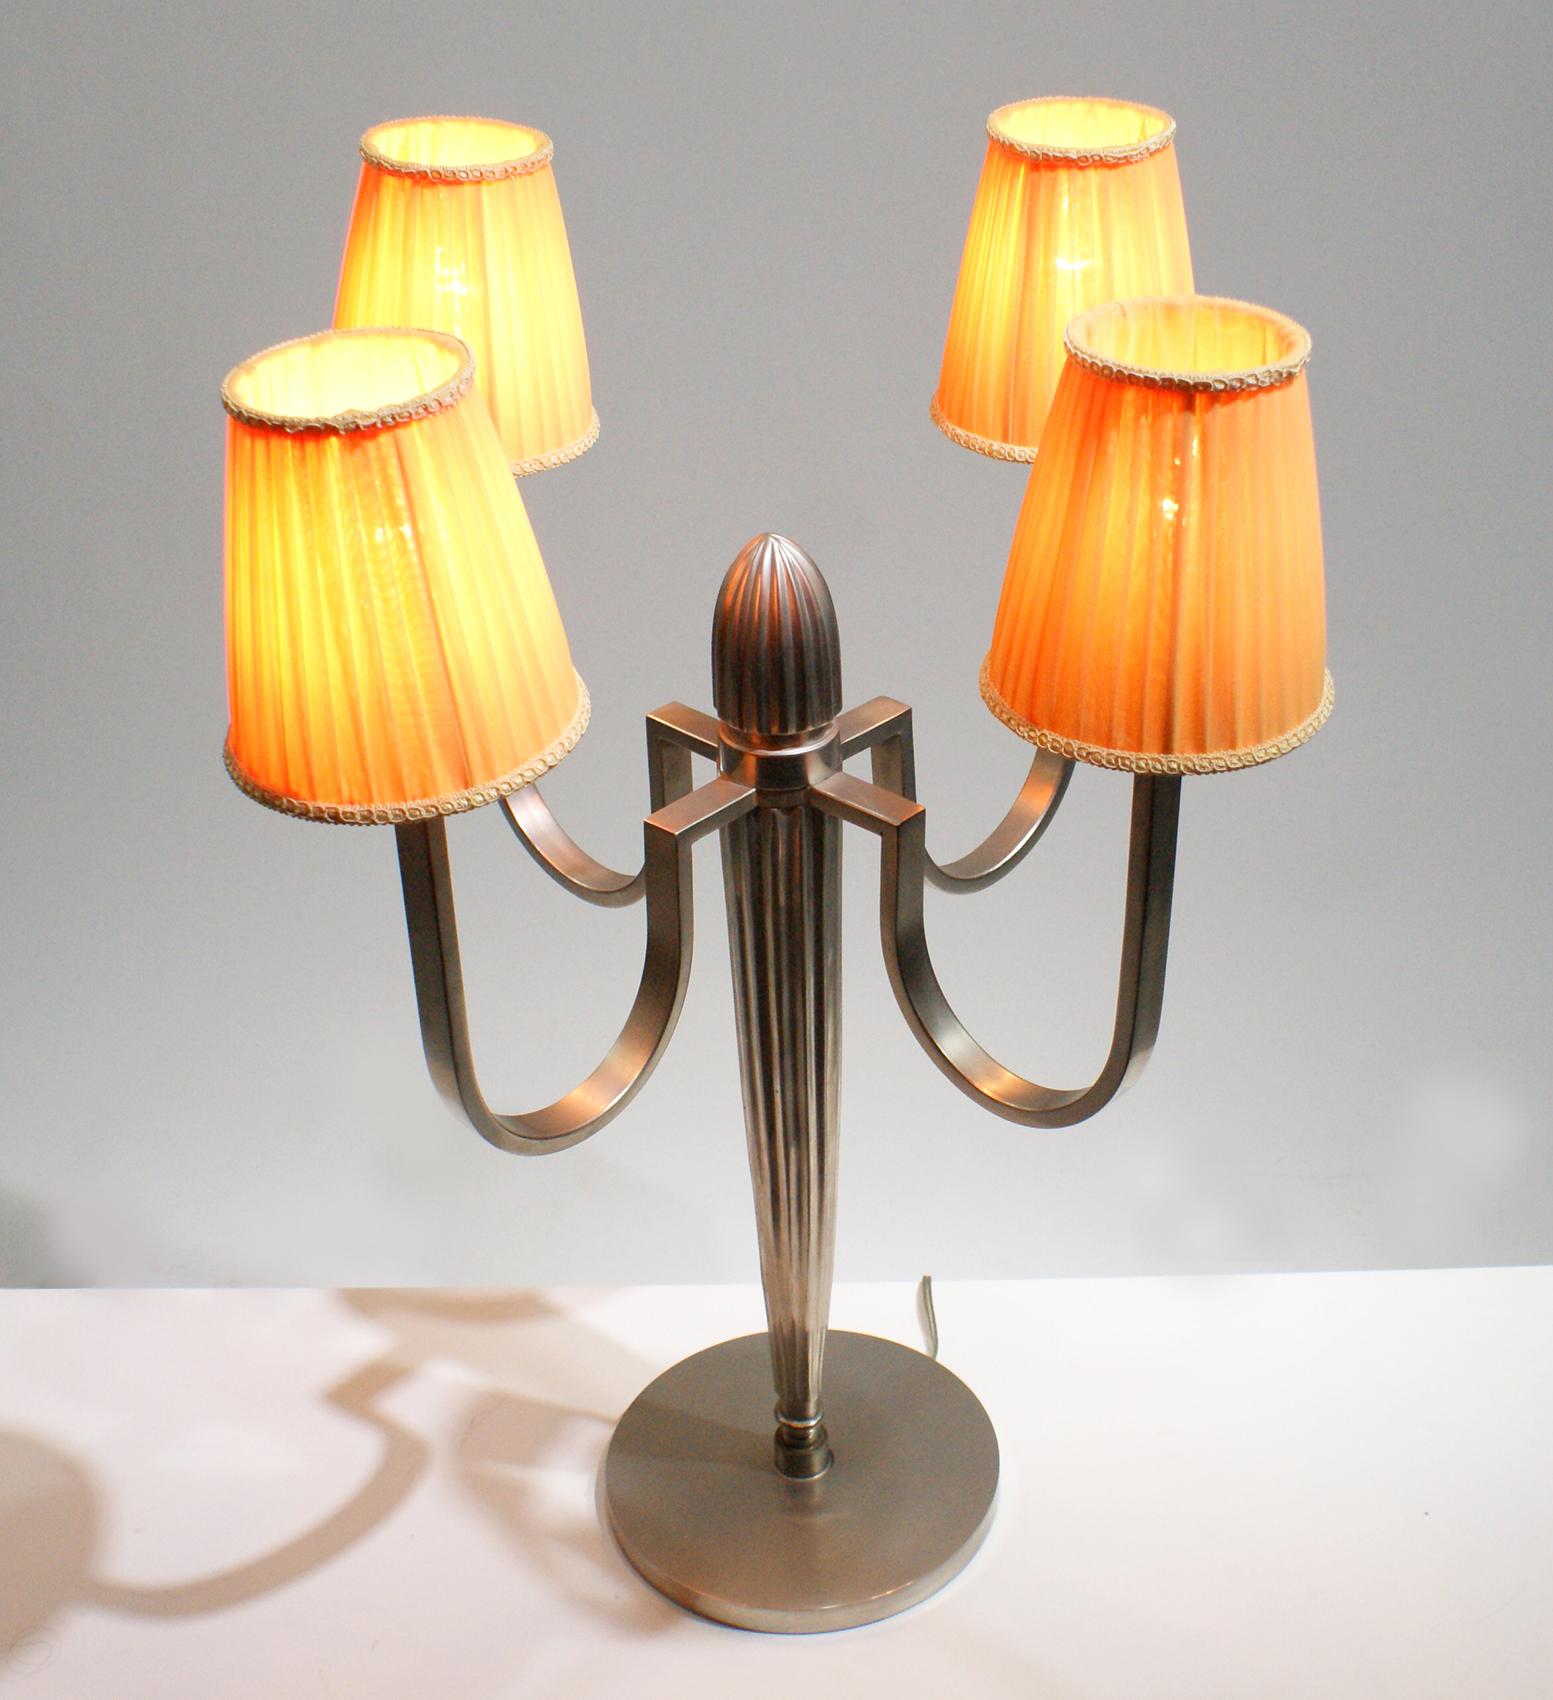 Paire de lampes de table Art Déco dans le style de l'artiste français J.E Ruhlmann, ayant une colonne centrale avec quatre bras de lumières courbes en bronze argenté de conception moderniste, supportant quatre abat-jour plissés de forme 